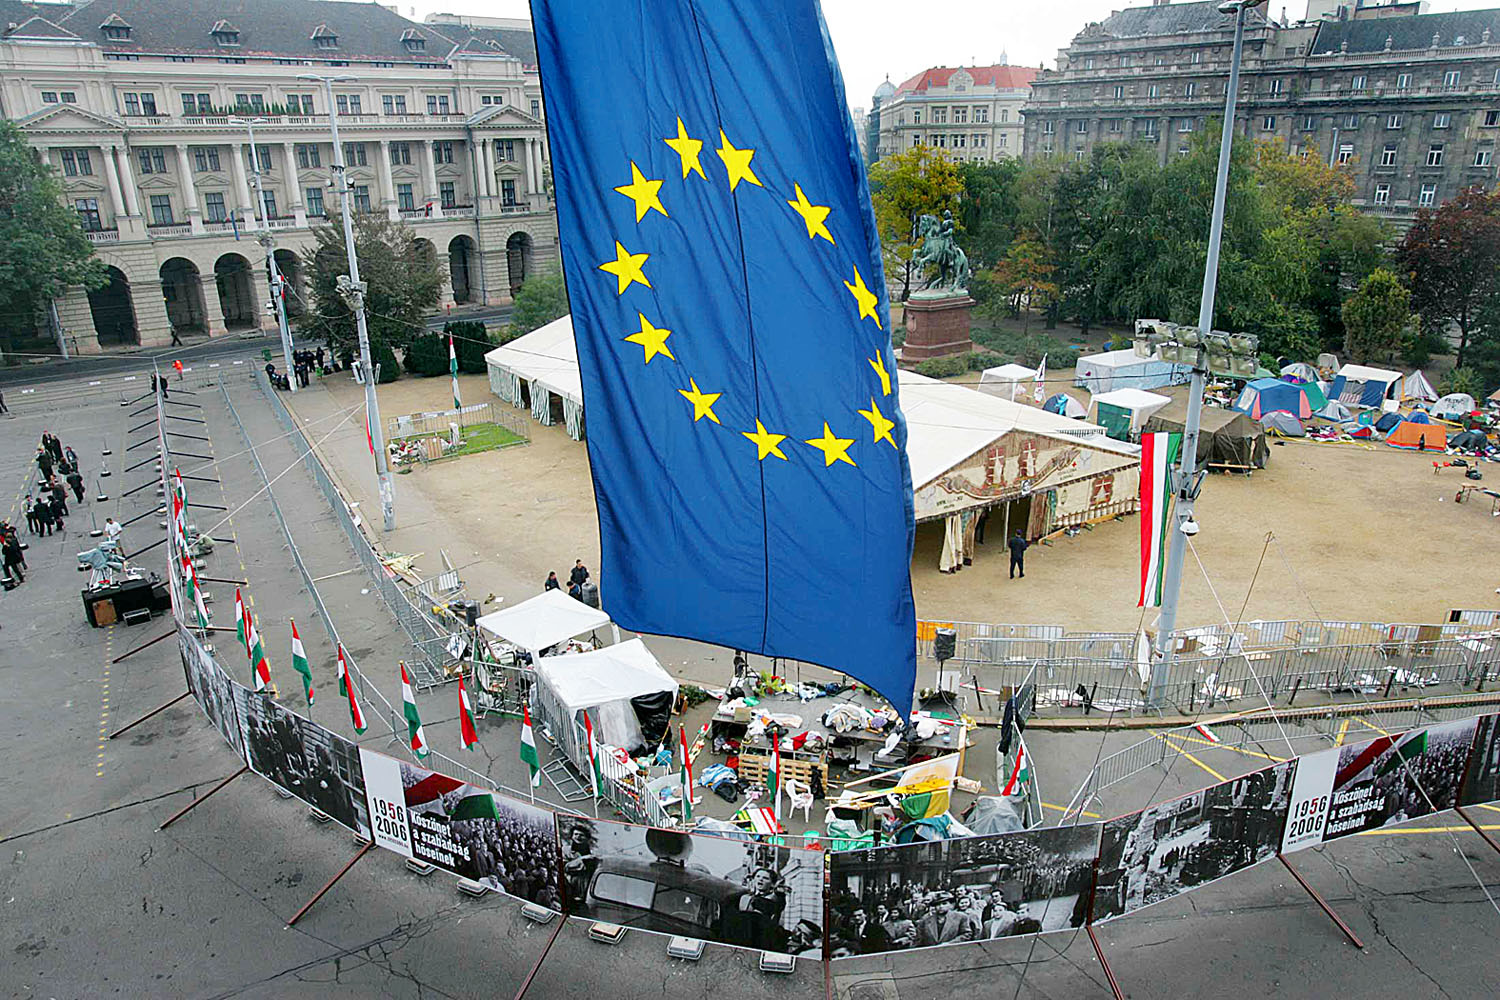 2006, Kossuth tér. Akkor a Fidesz nem akart változást